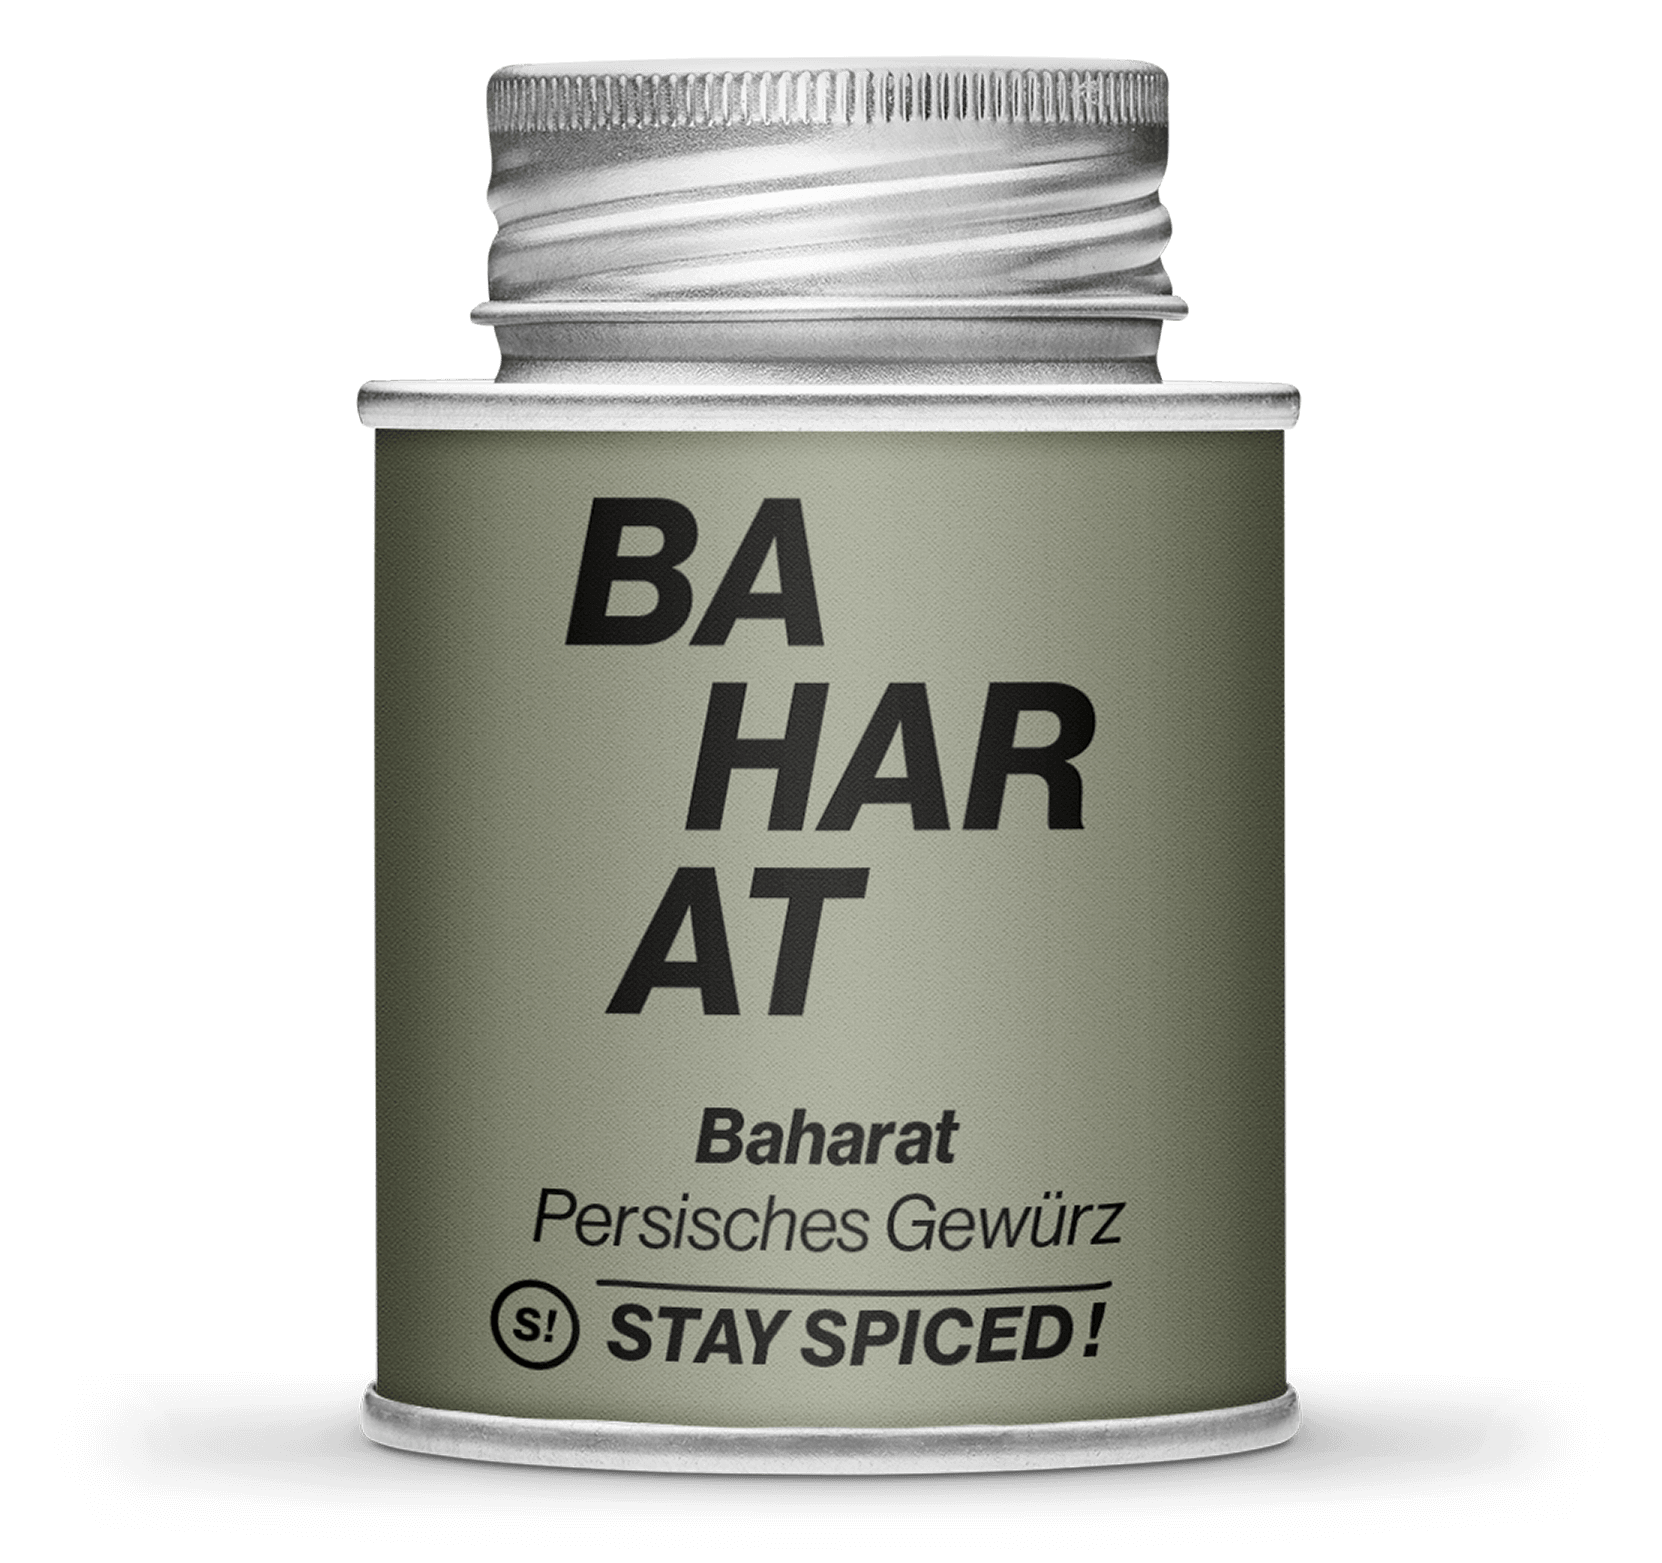 Entdecke die aromatische Baharat Gewürzmischung von STAY SPICED ...